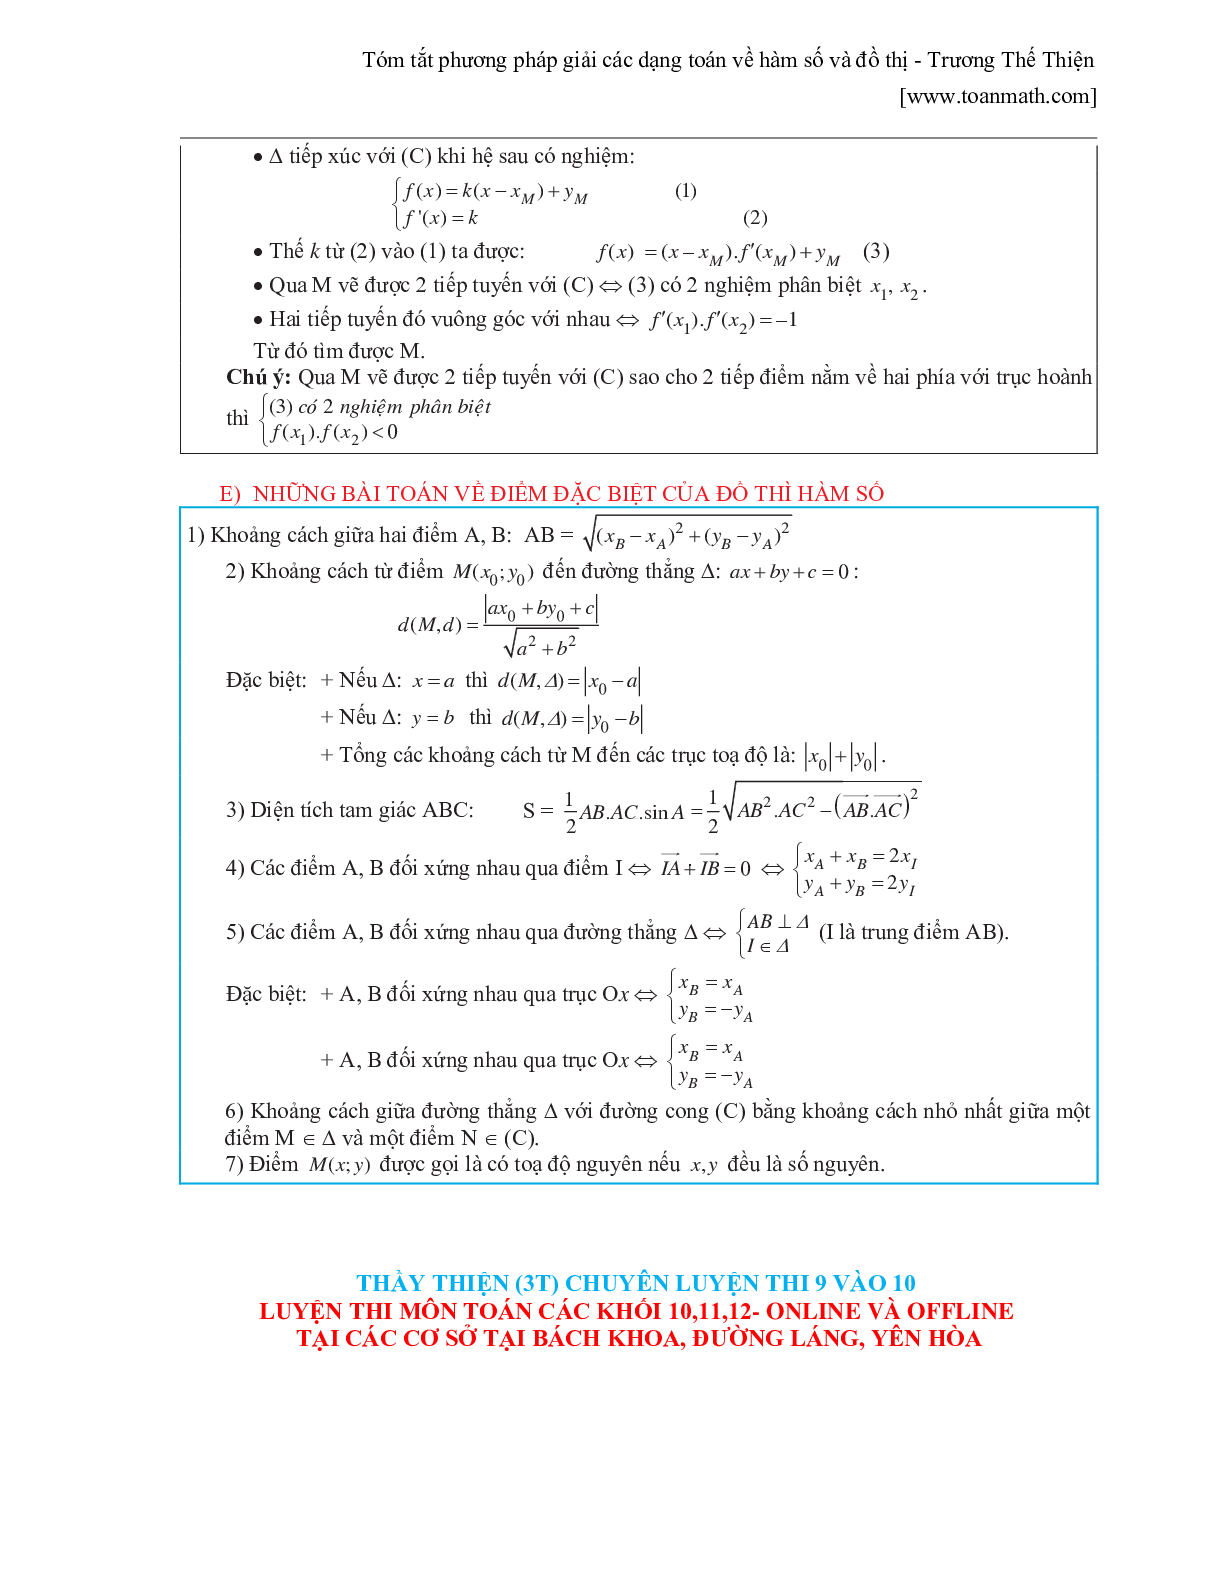 Tóm tắt phương pháp giải các dạng toán về hàm số và đồ thị (trang 10)